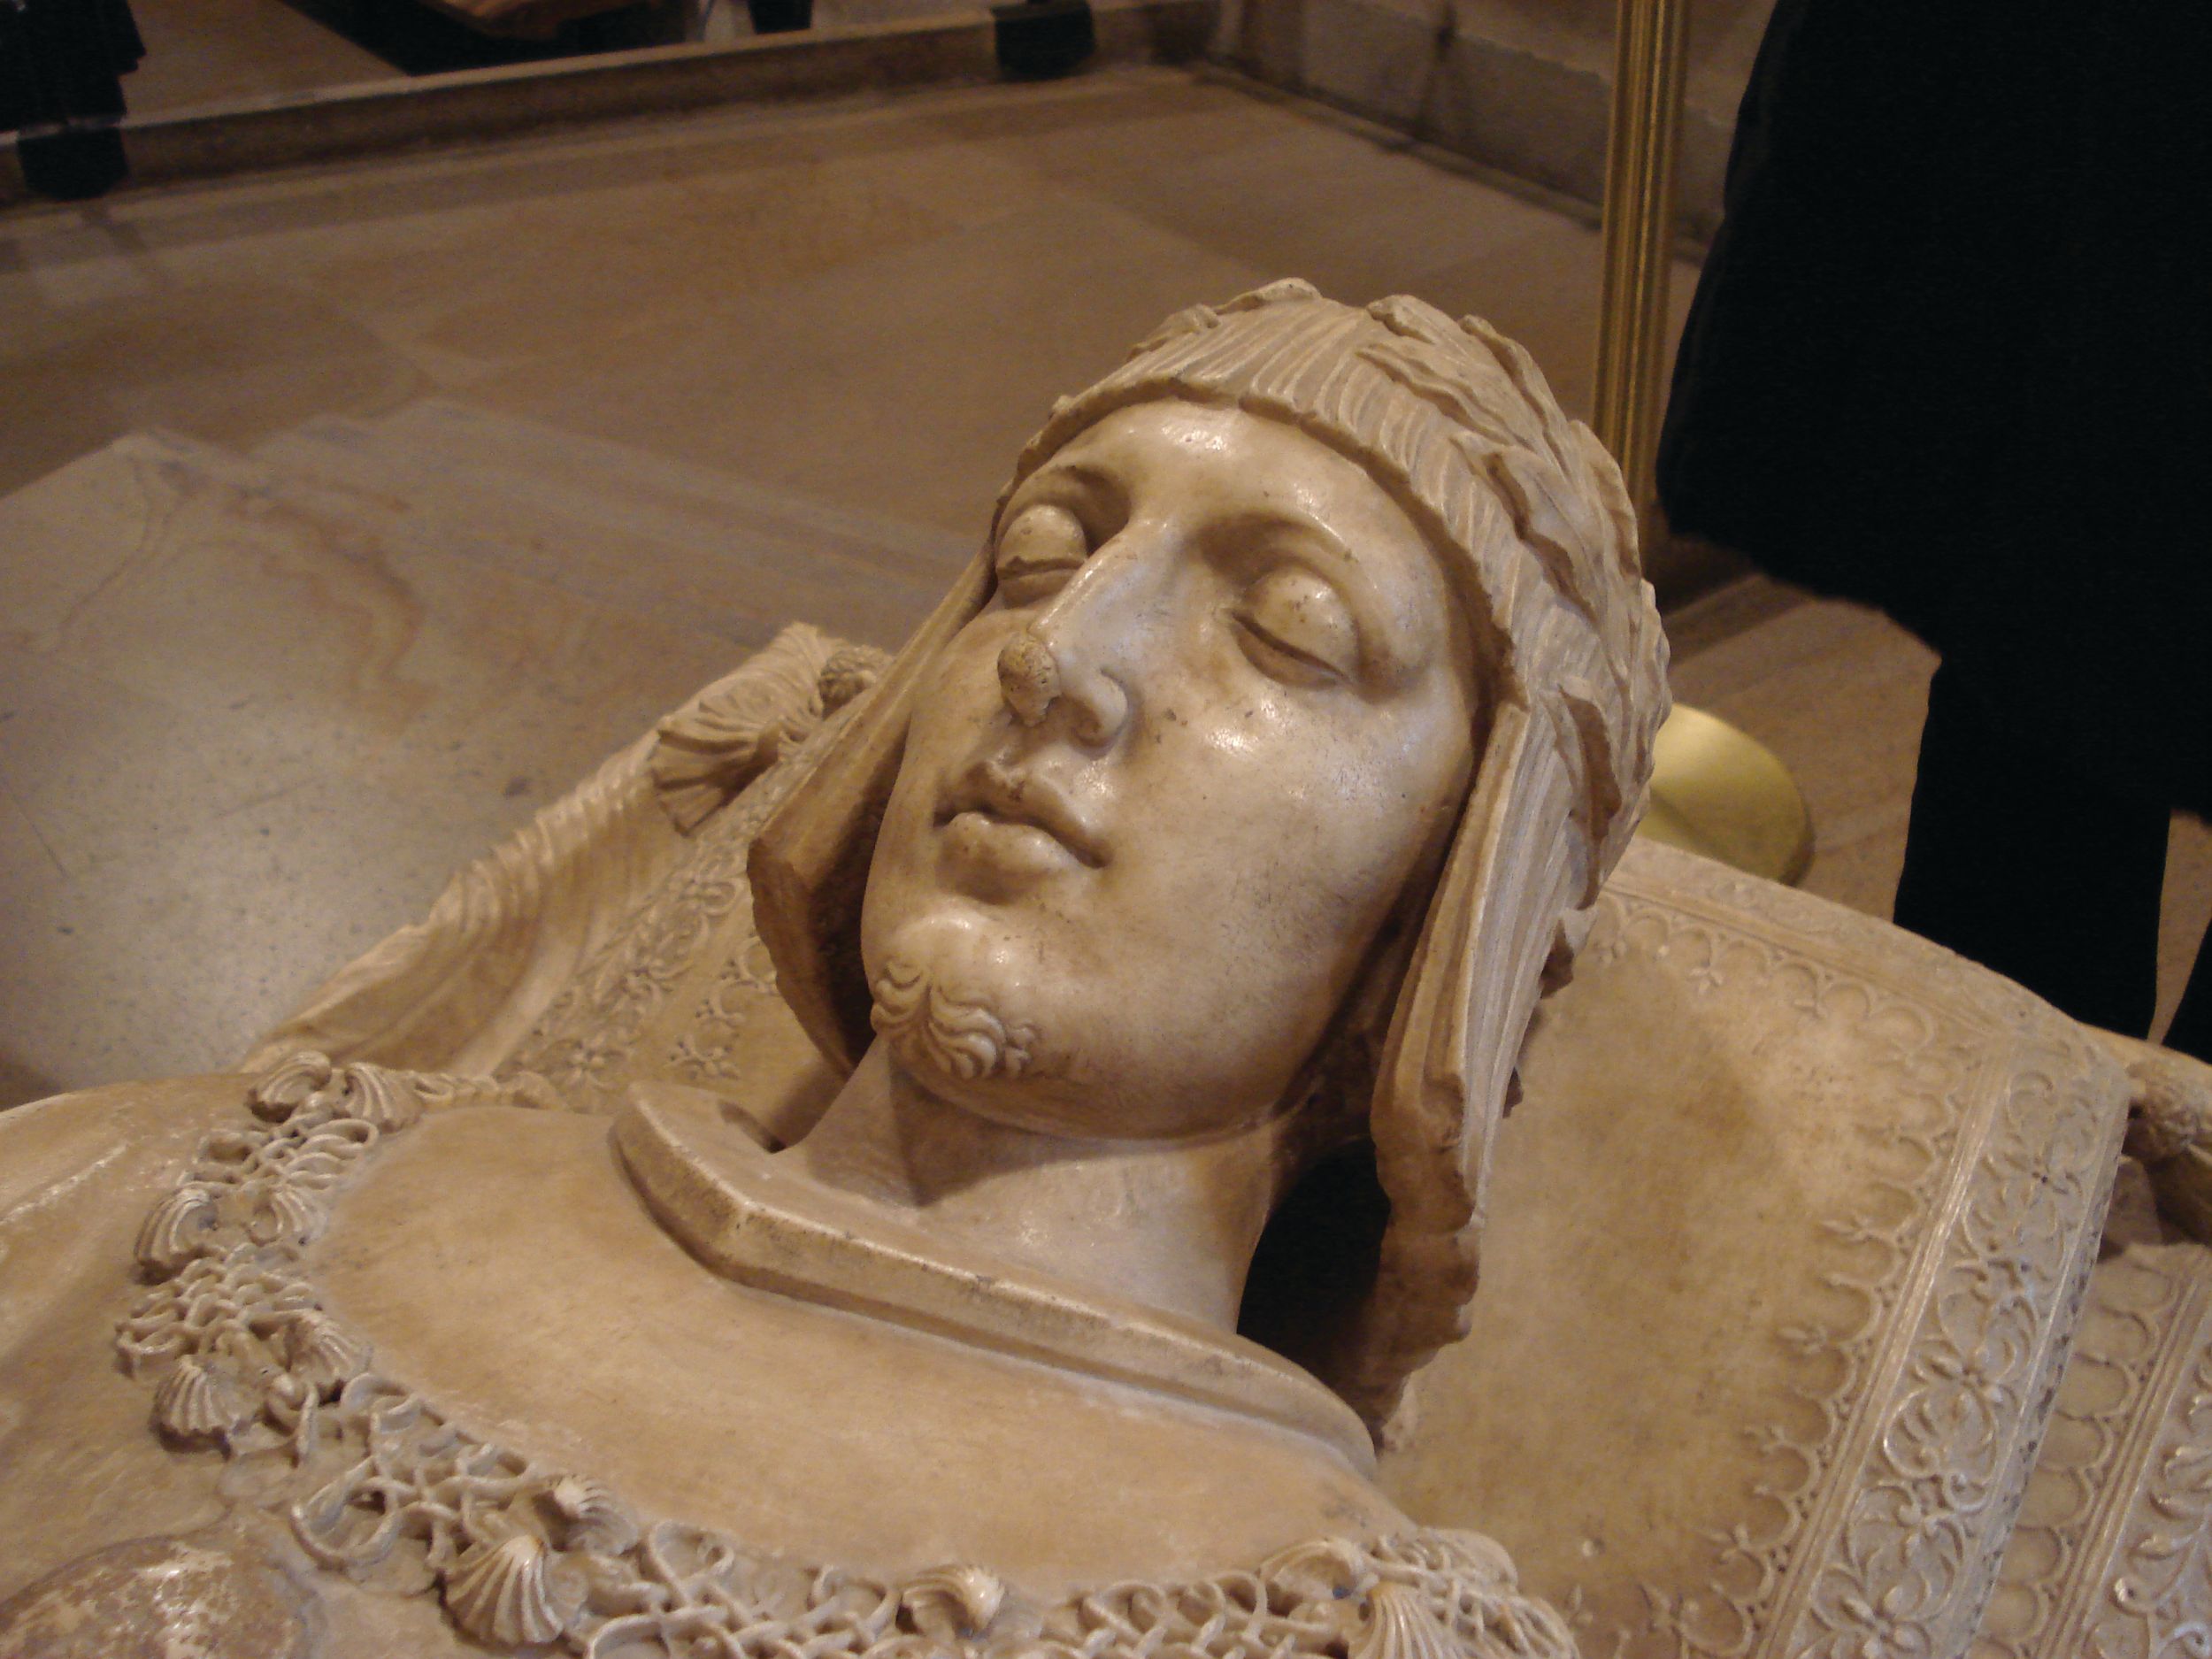 Funerary bust of Gaston de Foix.